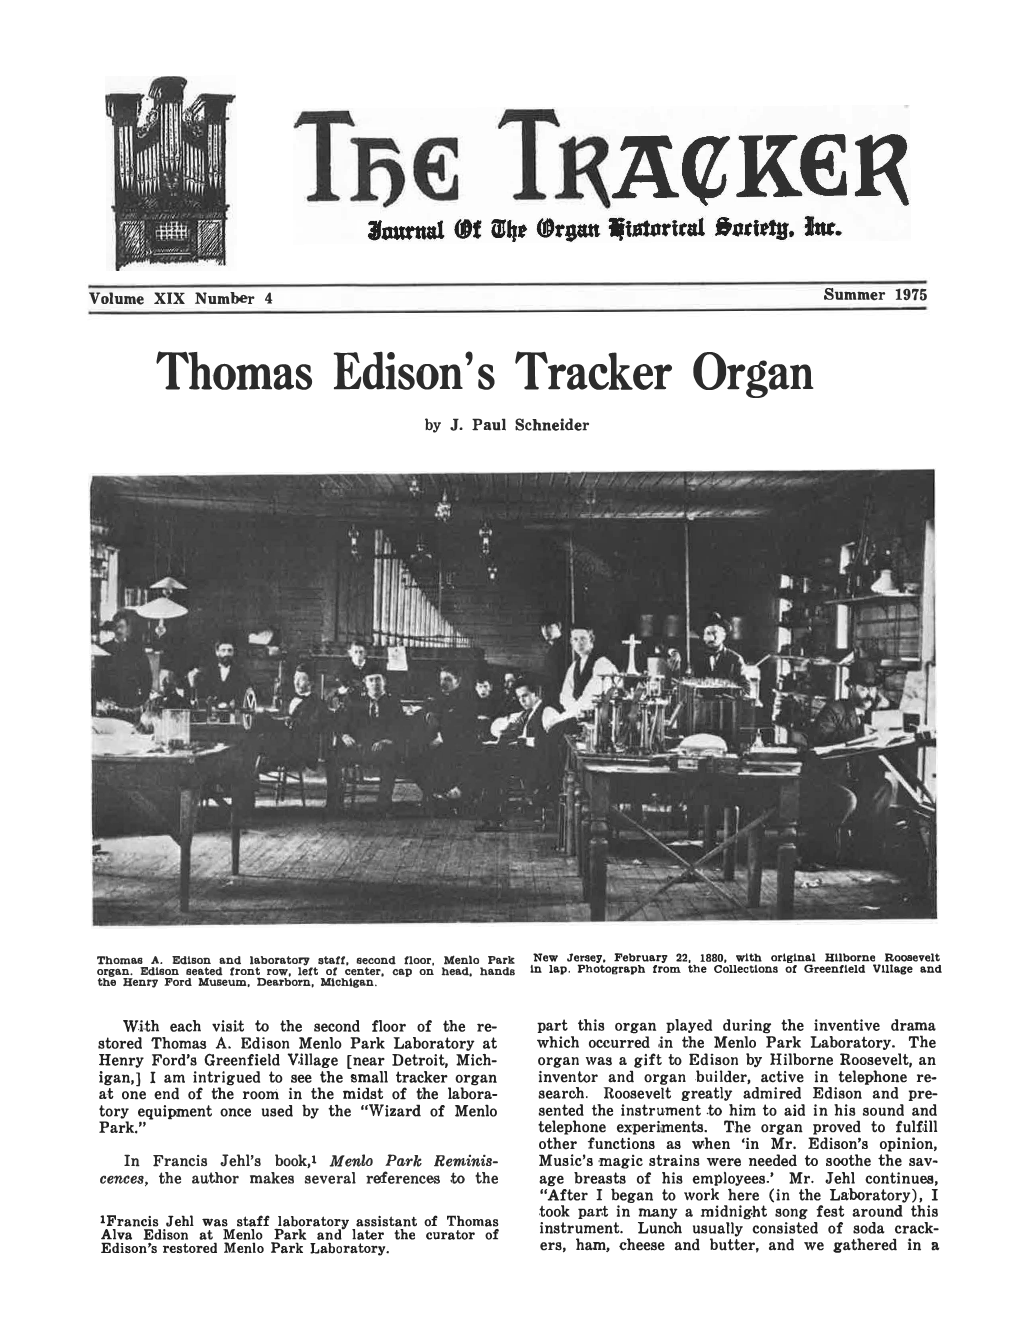 Thomas Edison's Tracker Organ by J